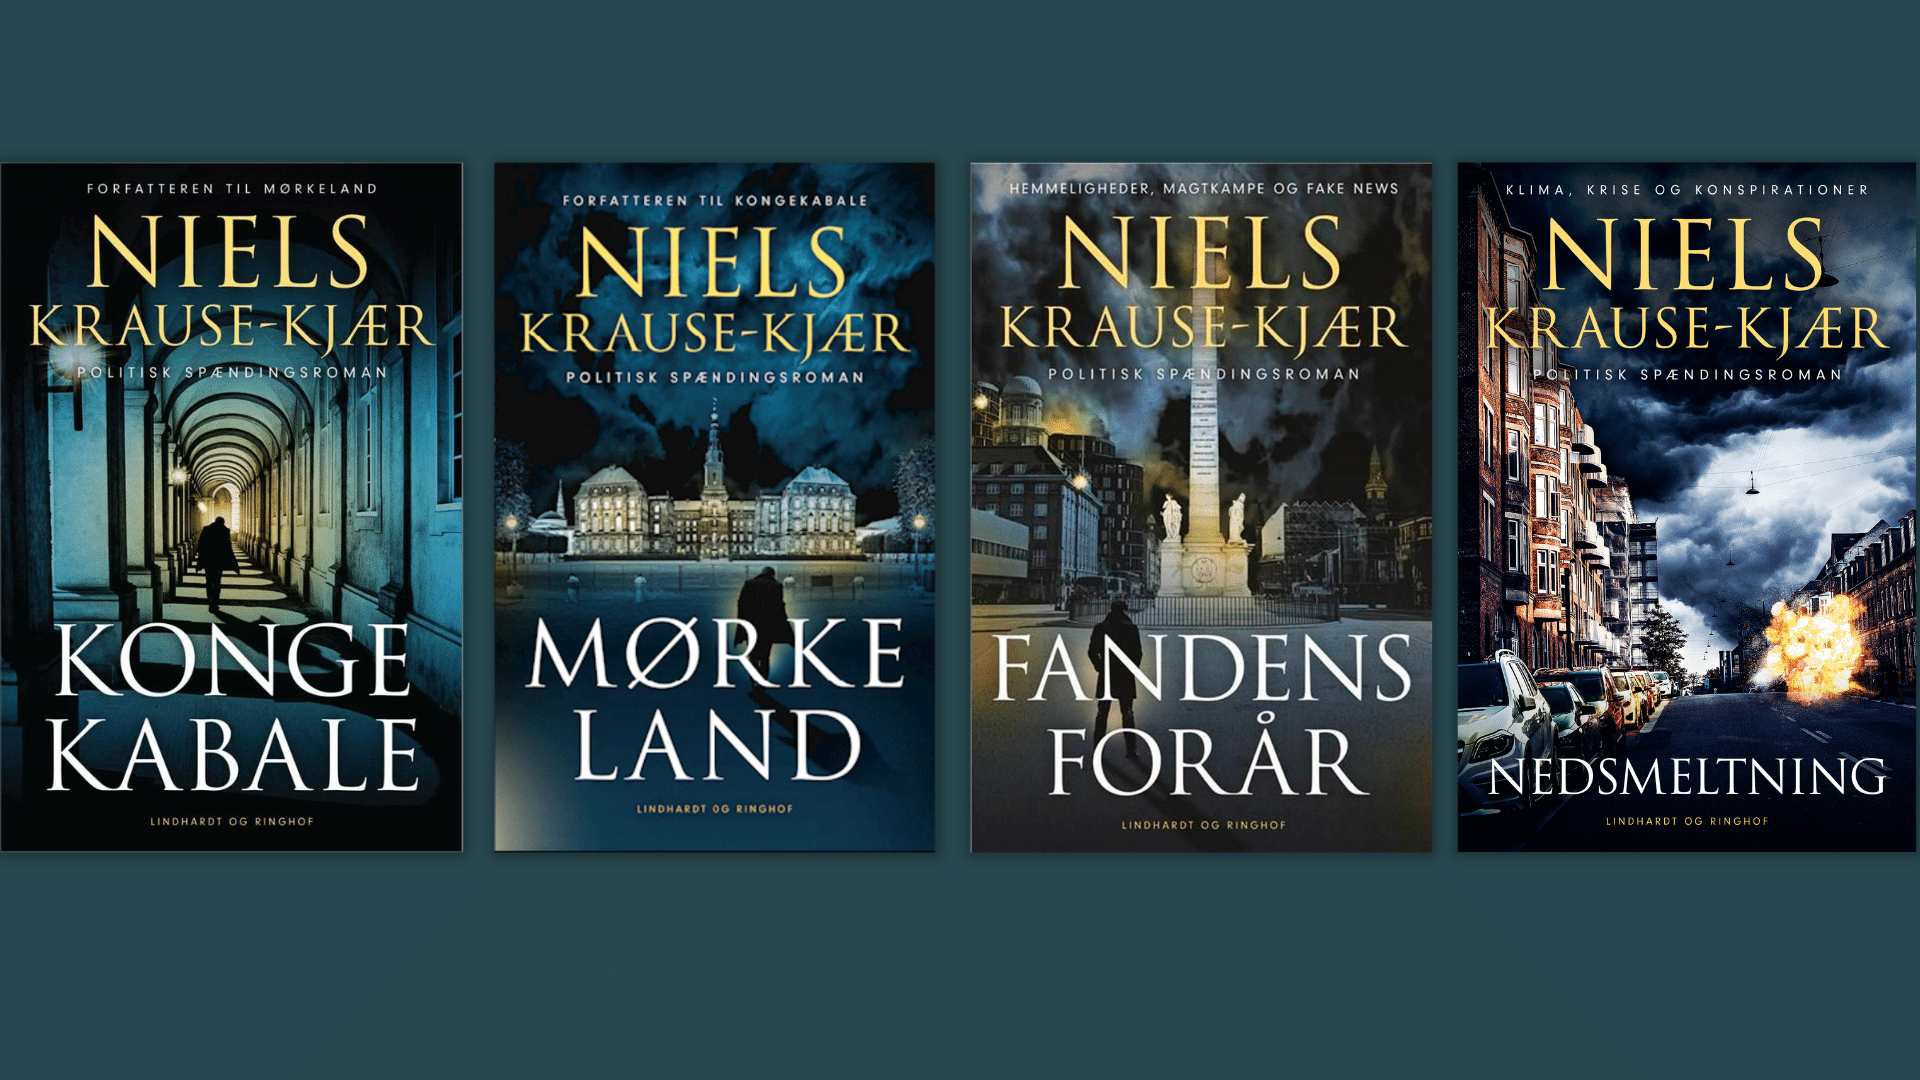 Niels krause-kjær serie, nedsmeltning, kongekabale, mørkeland, fandens forår